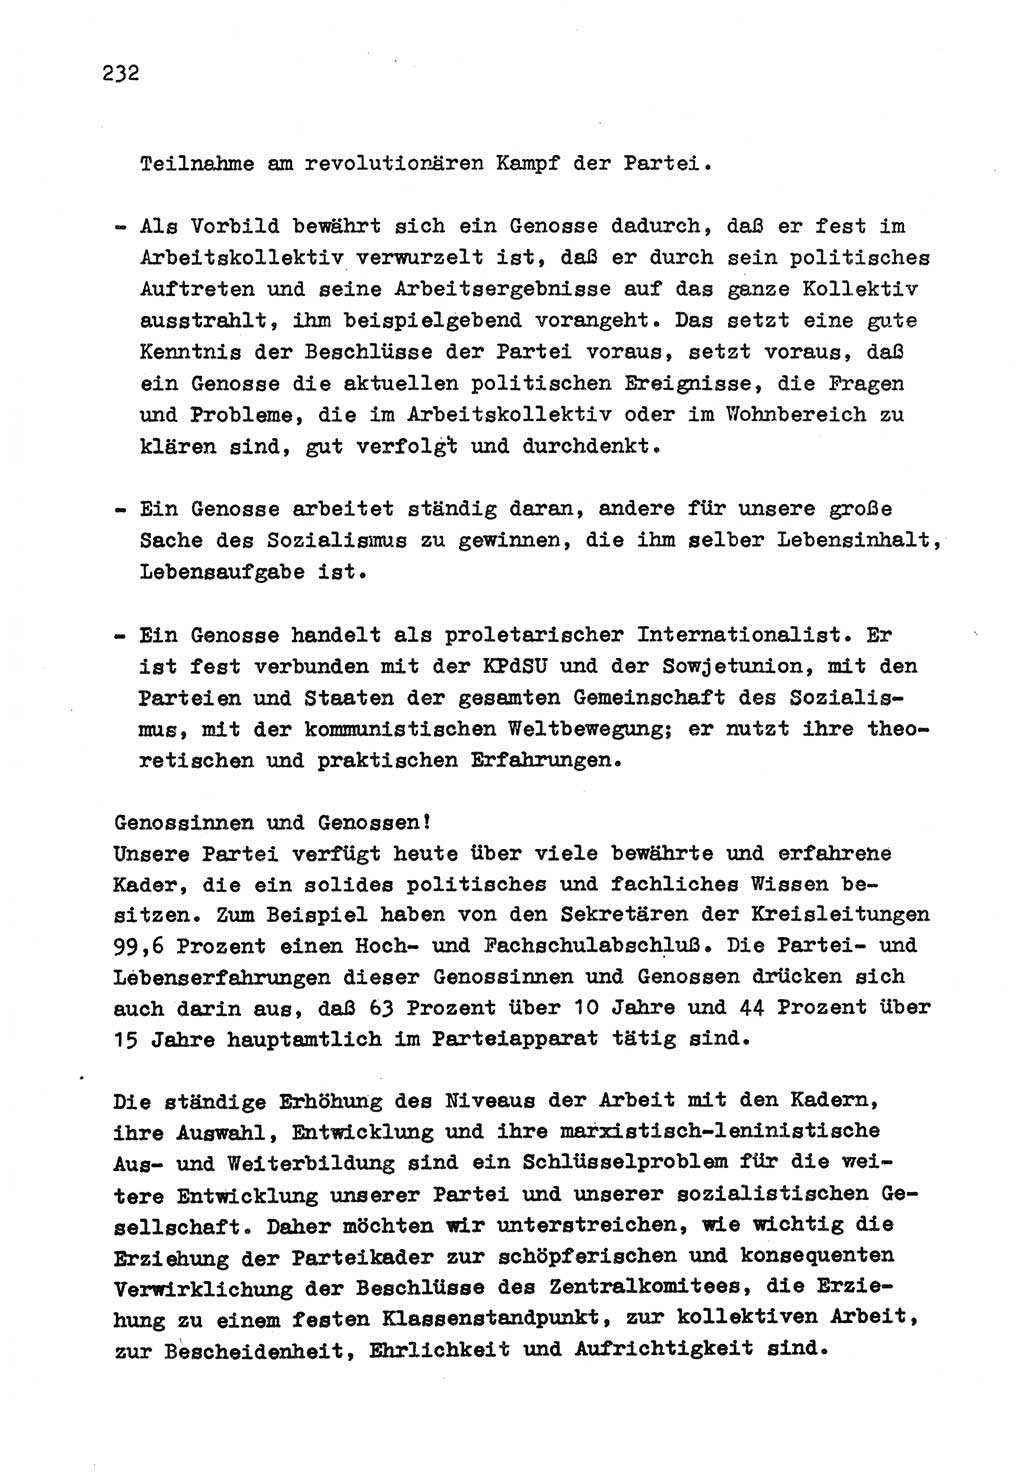 Zu Fragen der Parteiarbeit [Sozialistische Einheitspartei Deutschlands (SED) Deutsche Demokratische Republik (DDR)] 1979, Seite 232 (Fr. PA SED DDR 1979, S. 232)